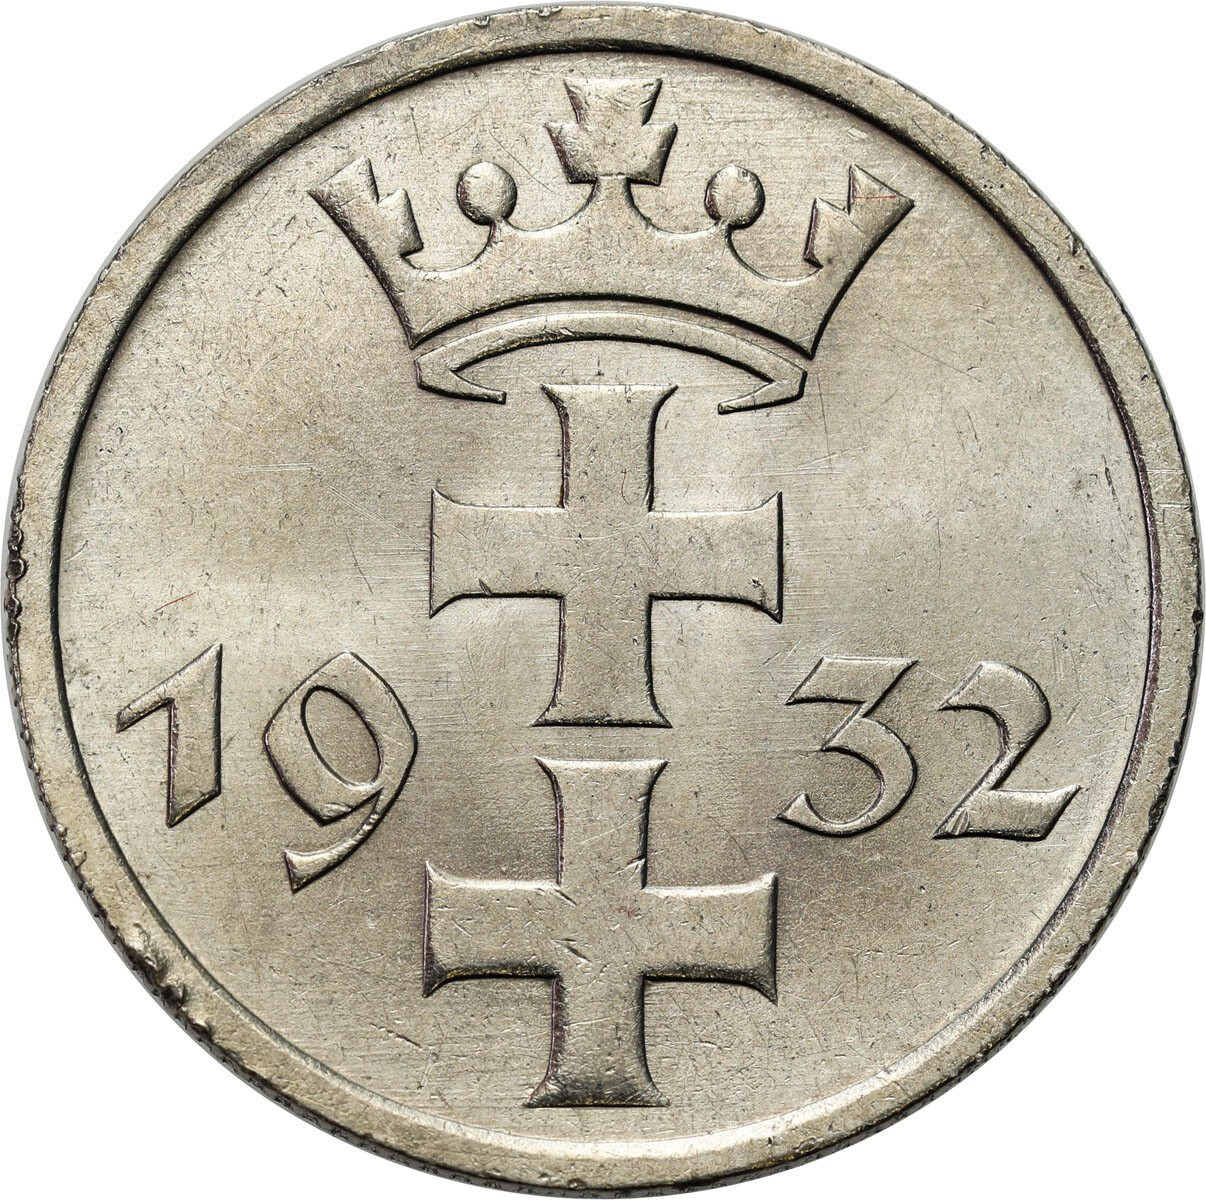 Wolne Miasto Gdańsk/Danzig. 1 Gulden 1932, Berlin - PIĘKNY